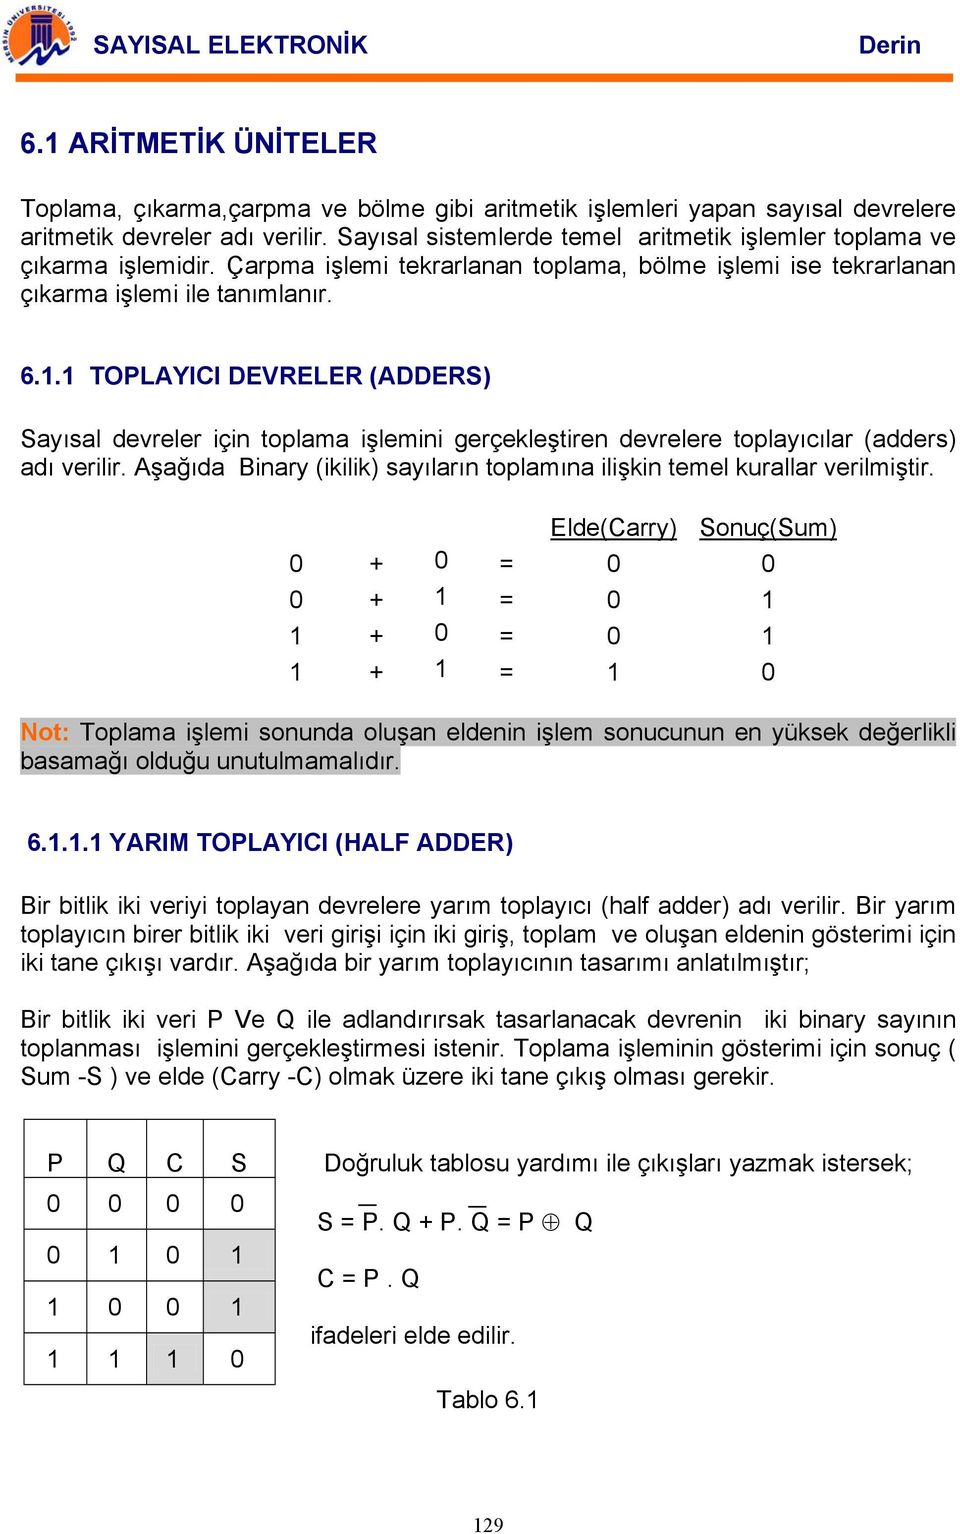 1 TOPLYII EVRELER (ERS) Sayısal devreler için toplama işlemini gerçekleştiren devrelere toplayıcılar (adders) adı verilir. şağıda inary (ikilik) sayıların toplamına ilişkin temel kurallar verilmiştir.